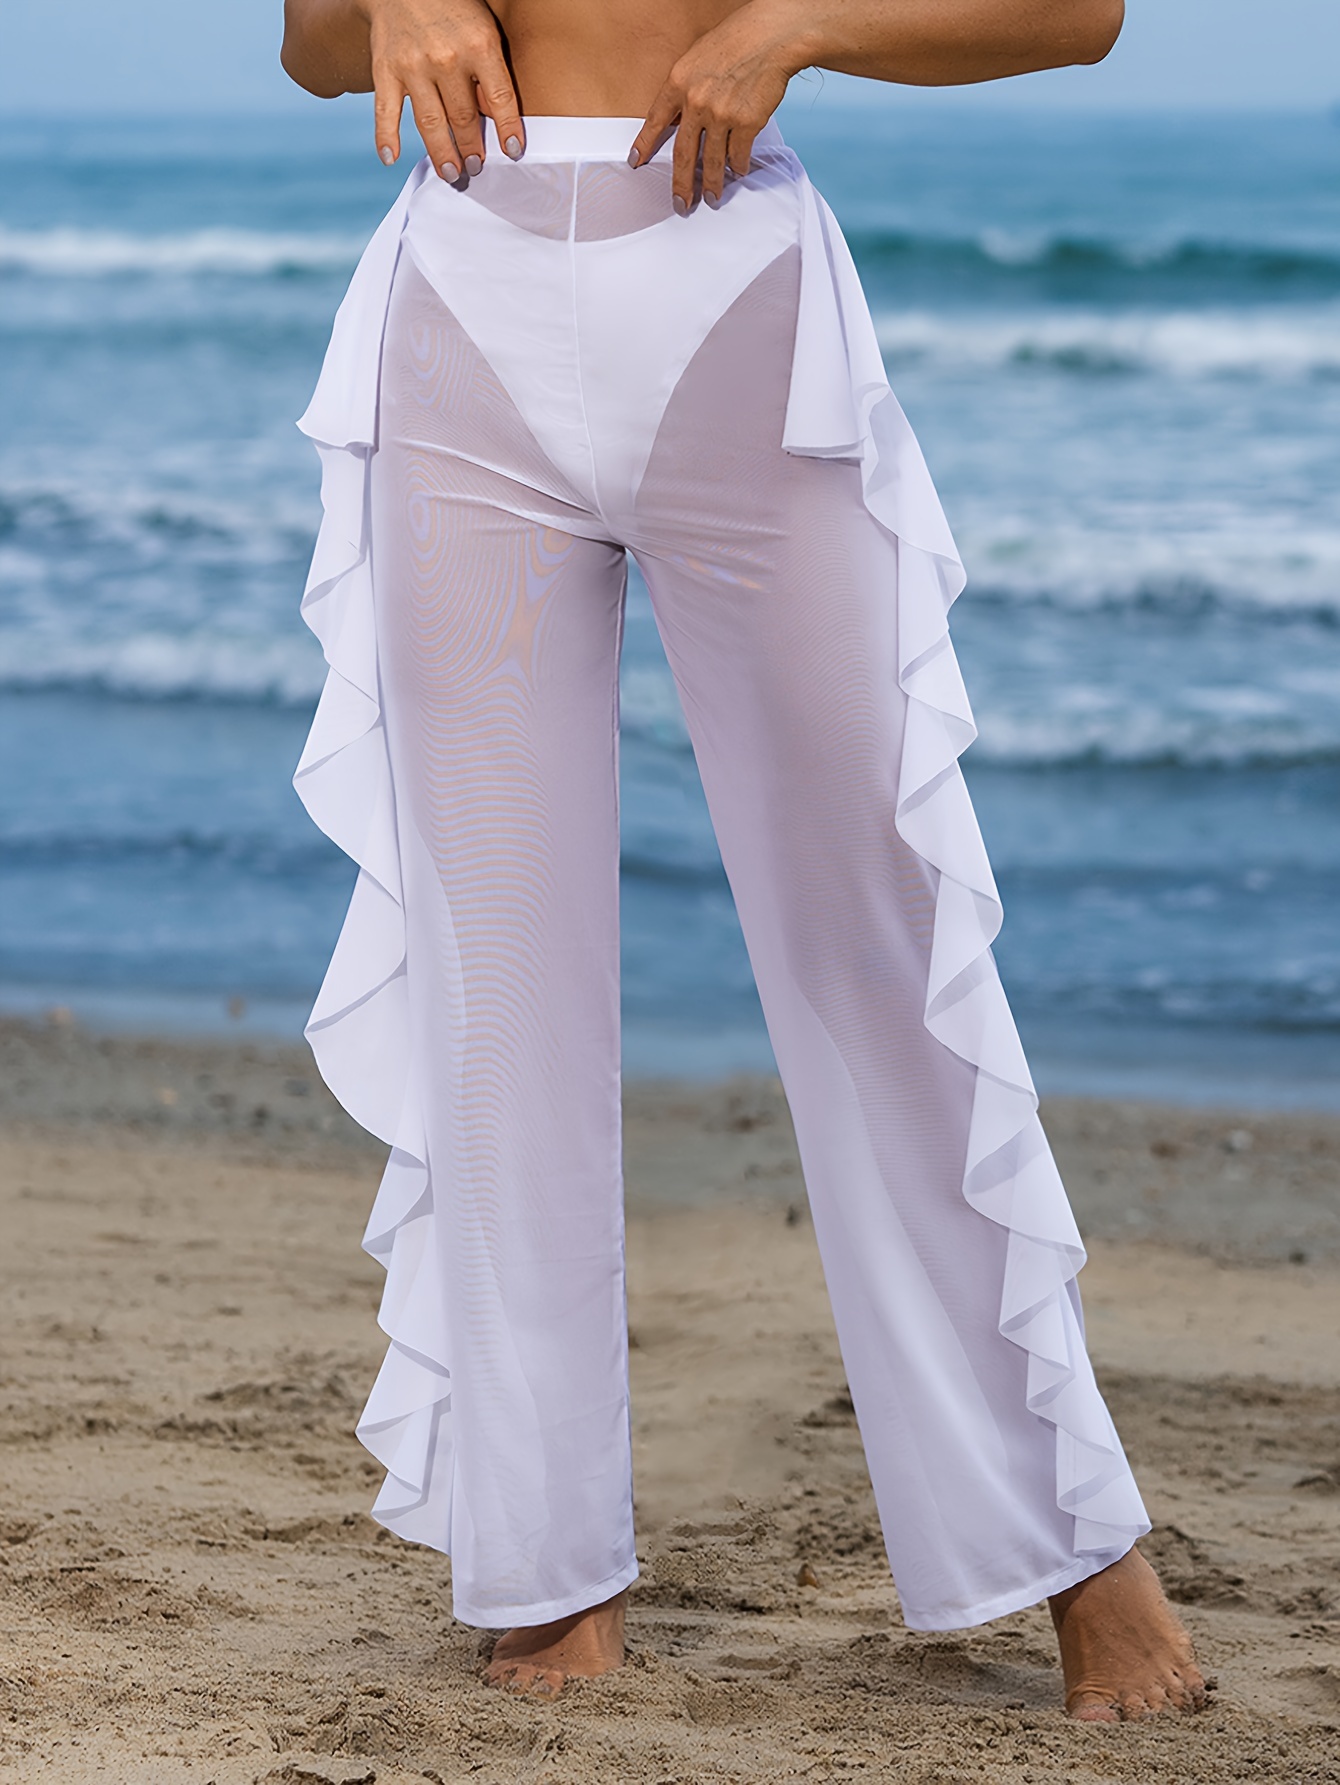 Pantalones de playa transparentes para Mujer, traje de baño de